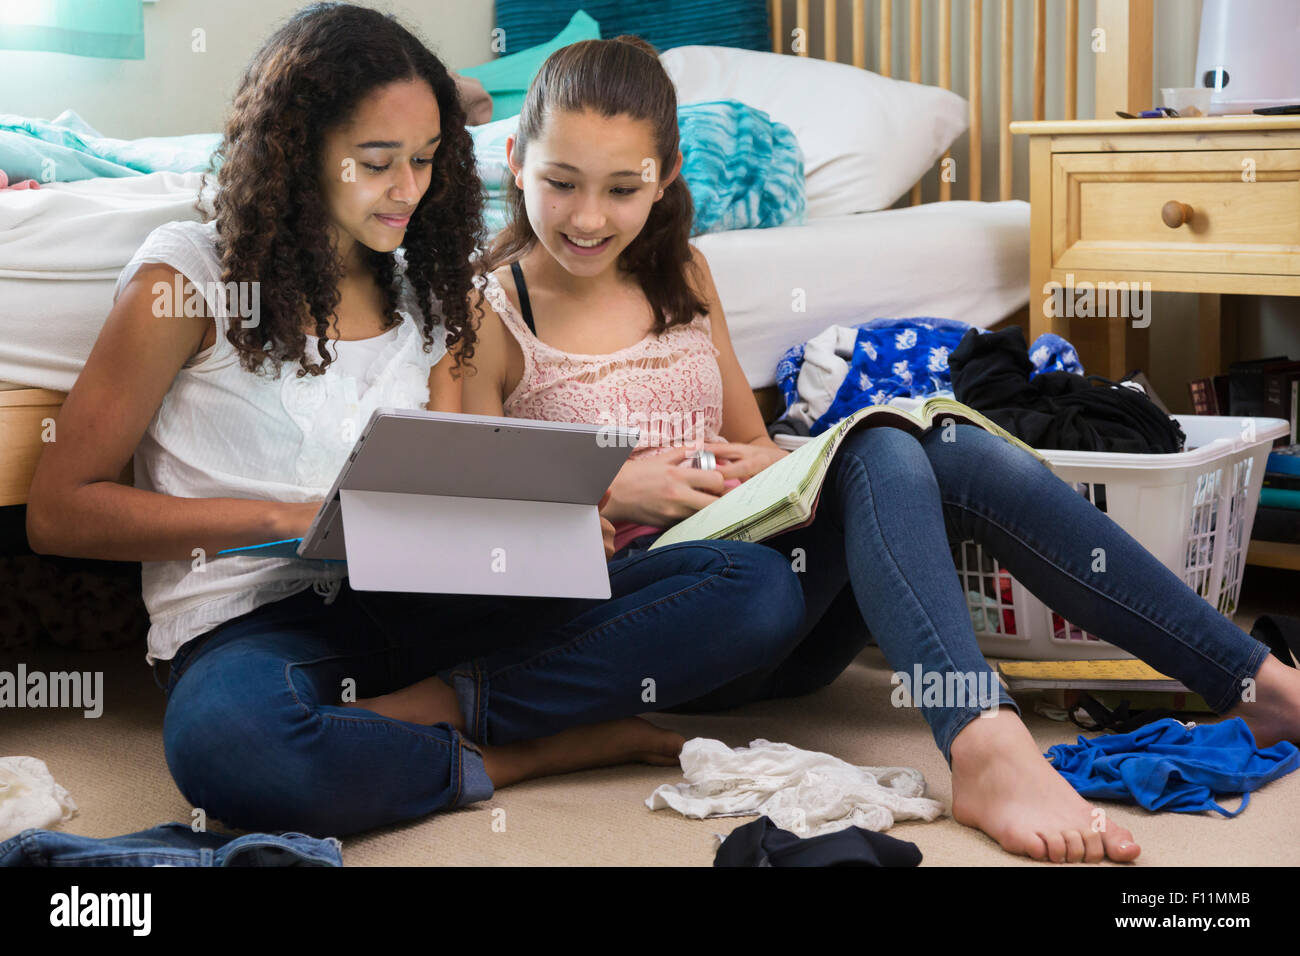 Las adolescentes mediante tableta digital en el dormitorio Foto de stock